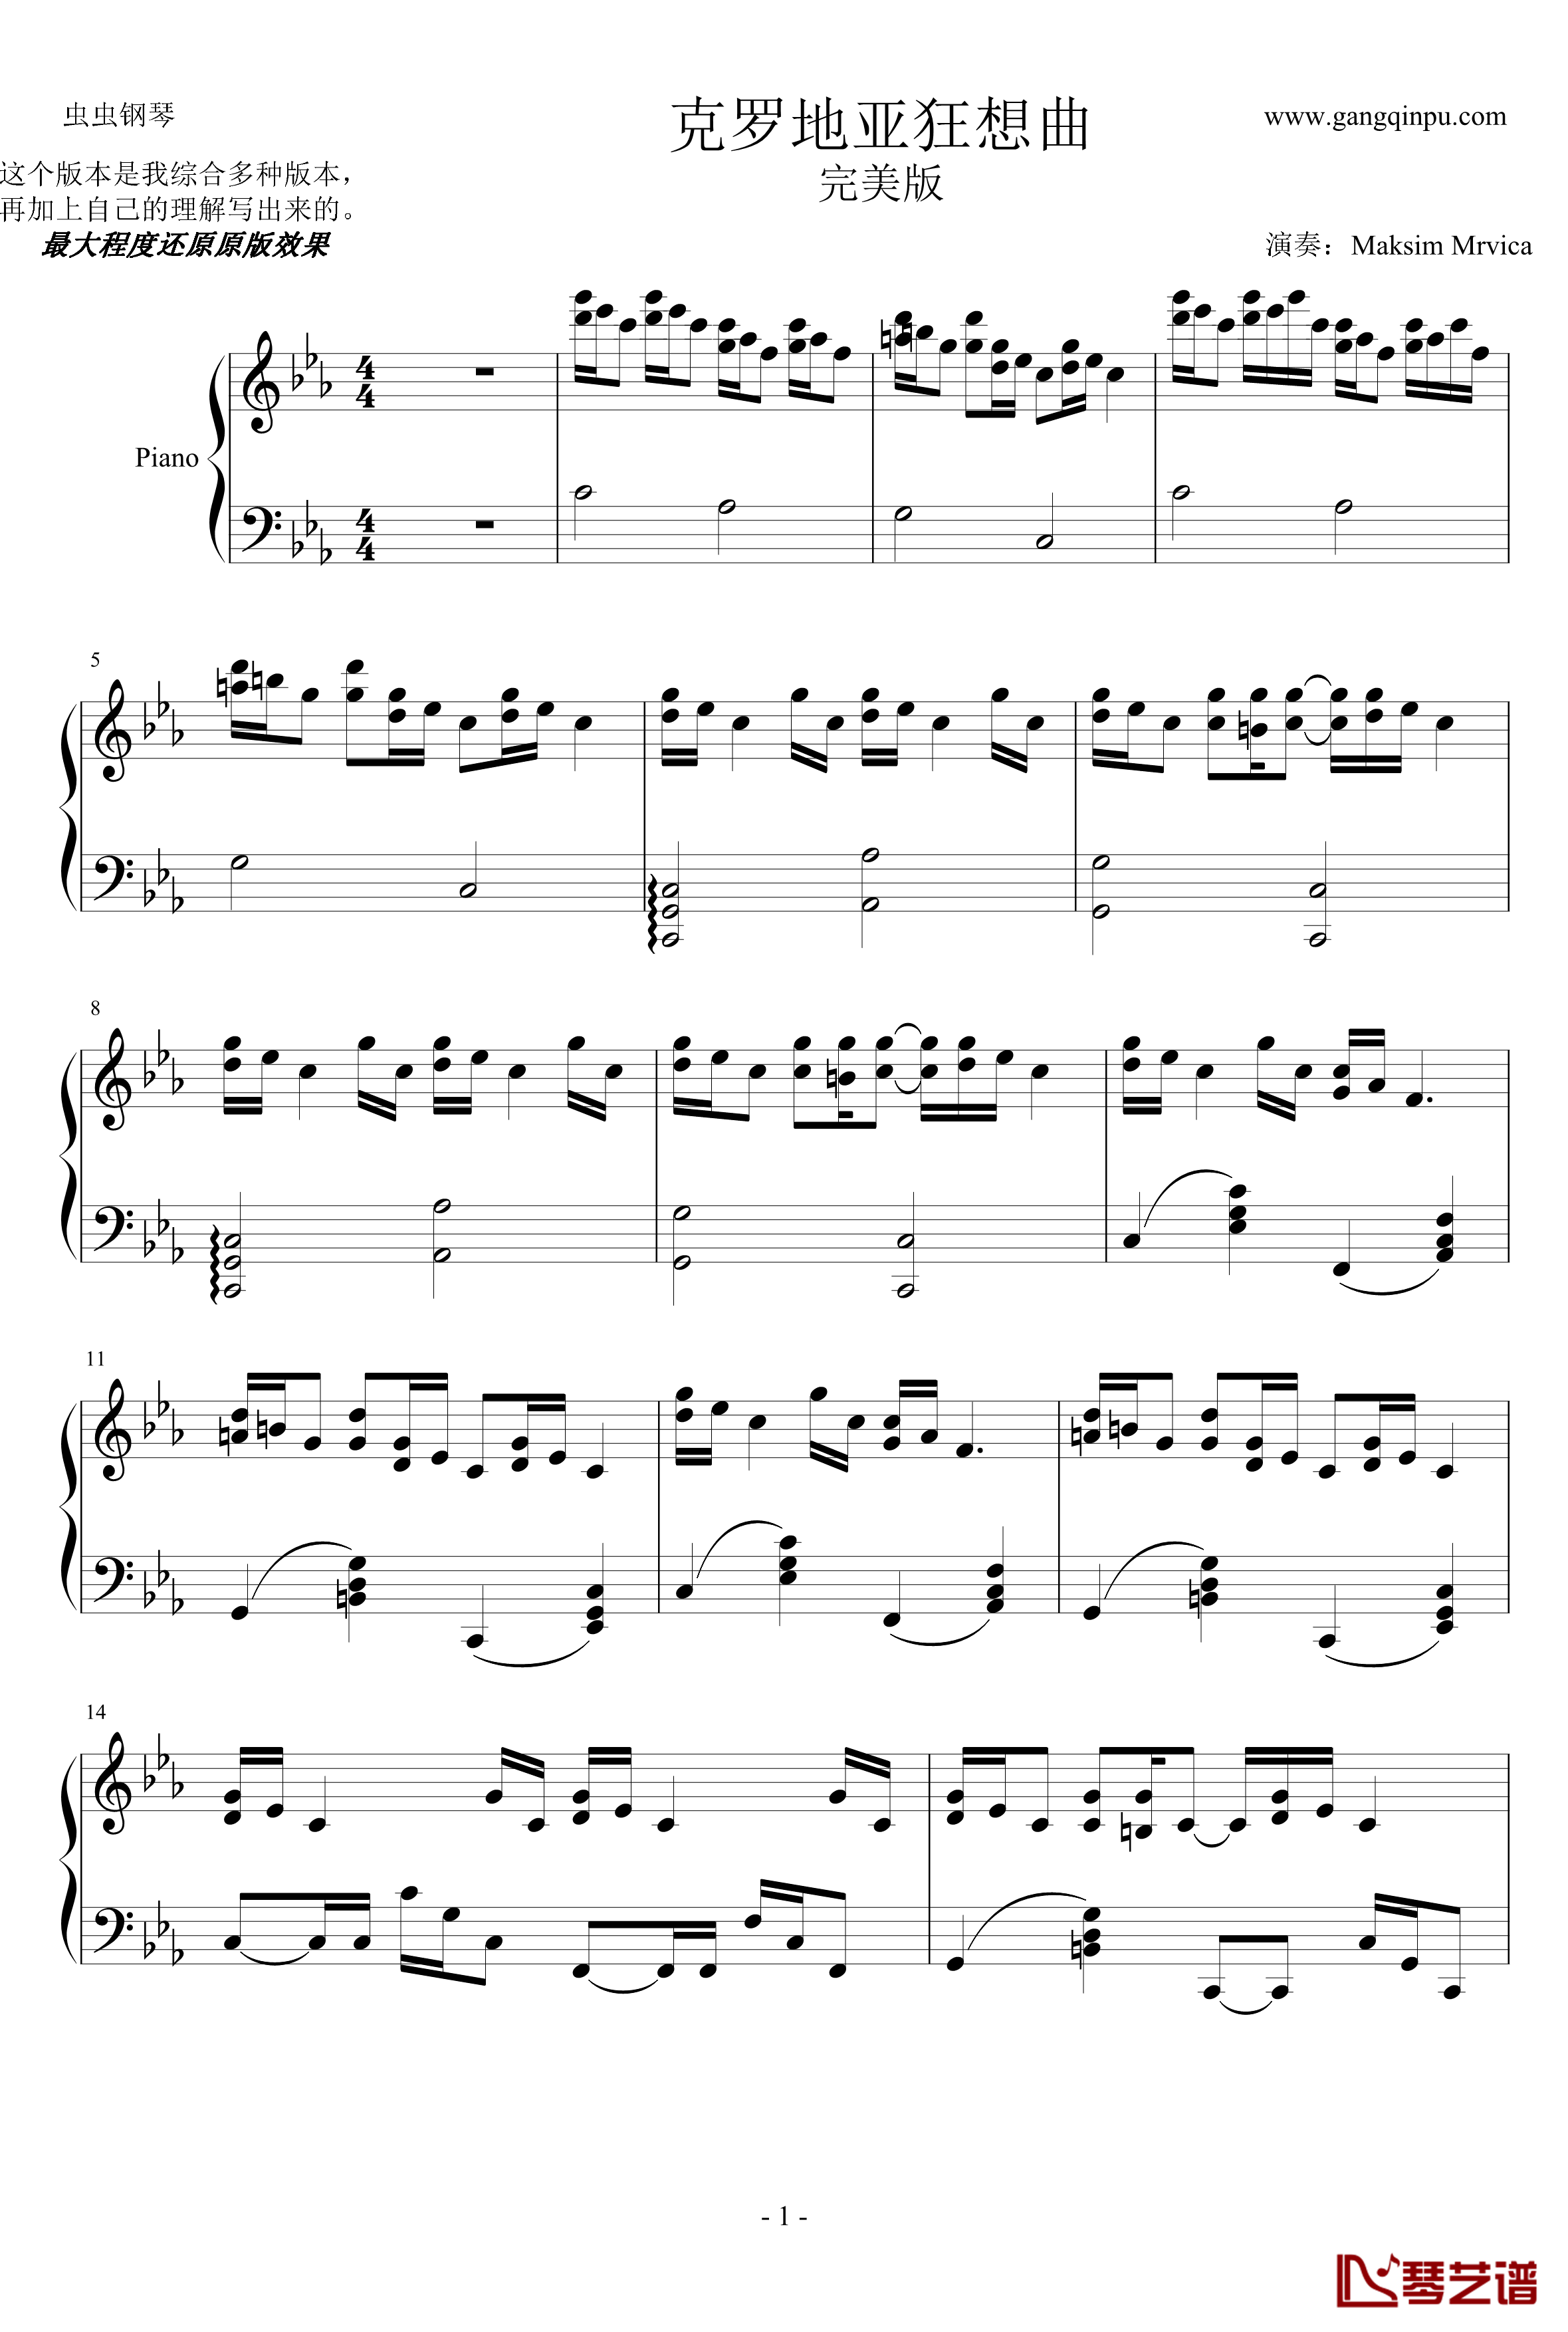 克罗地亚狂想曲钢琴谱-完美版-马克西姆-Maksim·Mrvica1